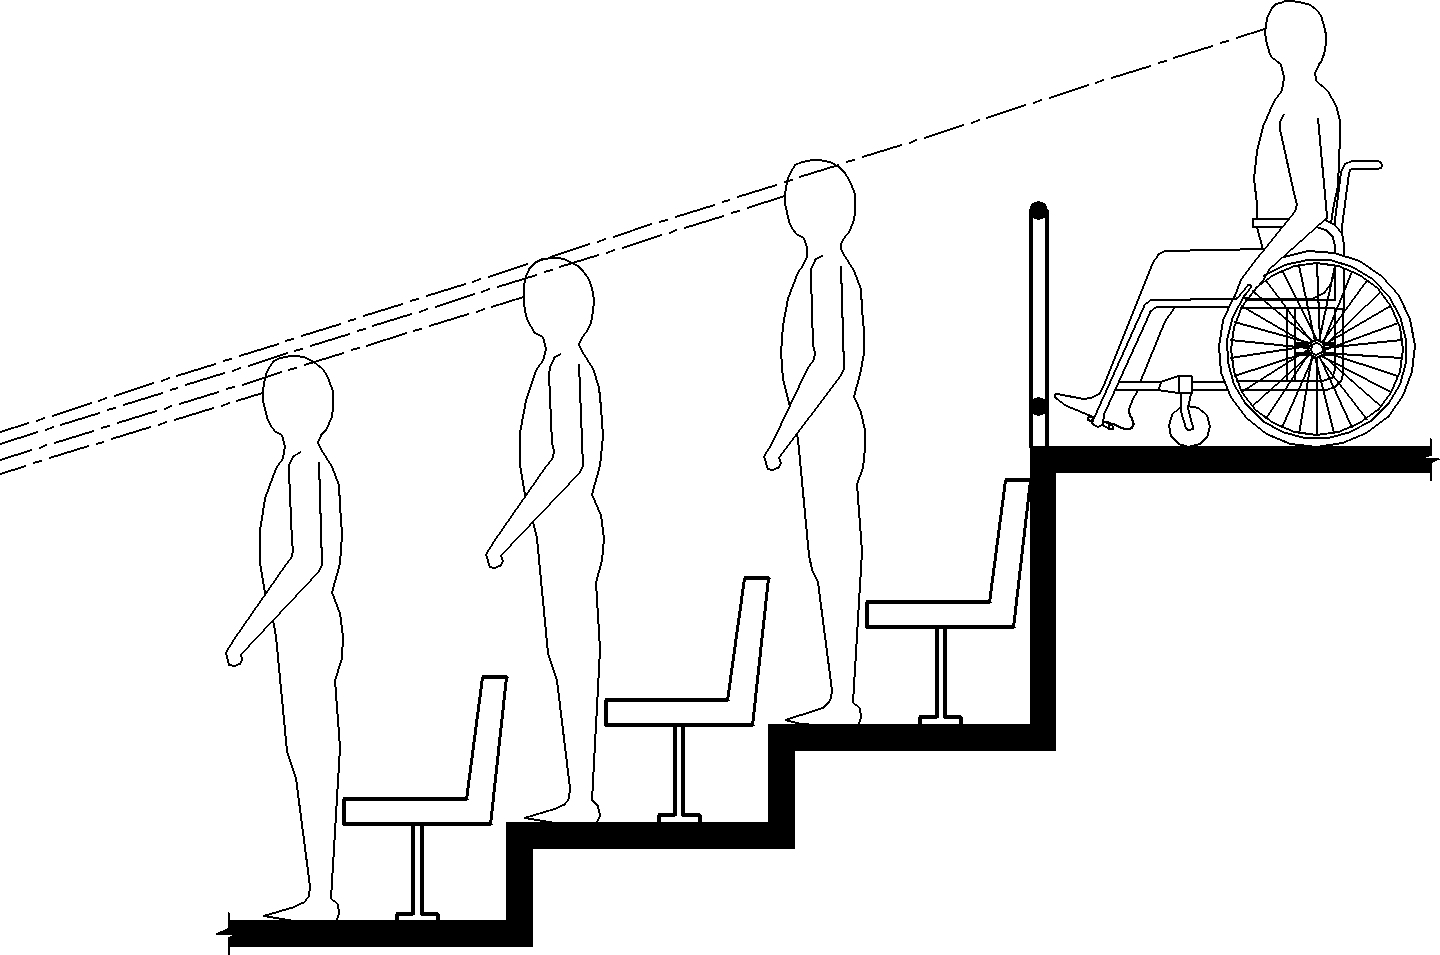 El dibujo de elevación muestra a una persona usando una silla de ruedas en un nivel superior de asientos escalonados lo suficientemente elevados como para tener una línea de visión entre las cabezas de los espectadores que están parados al frente